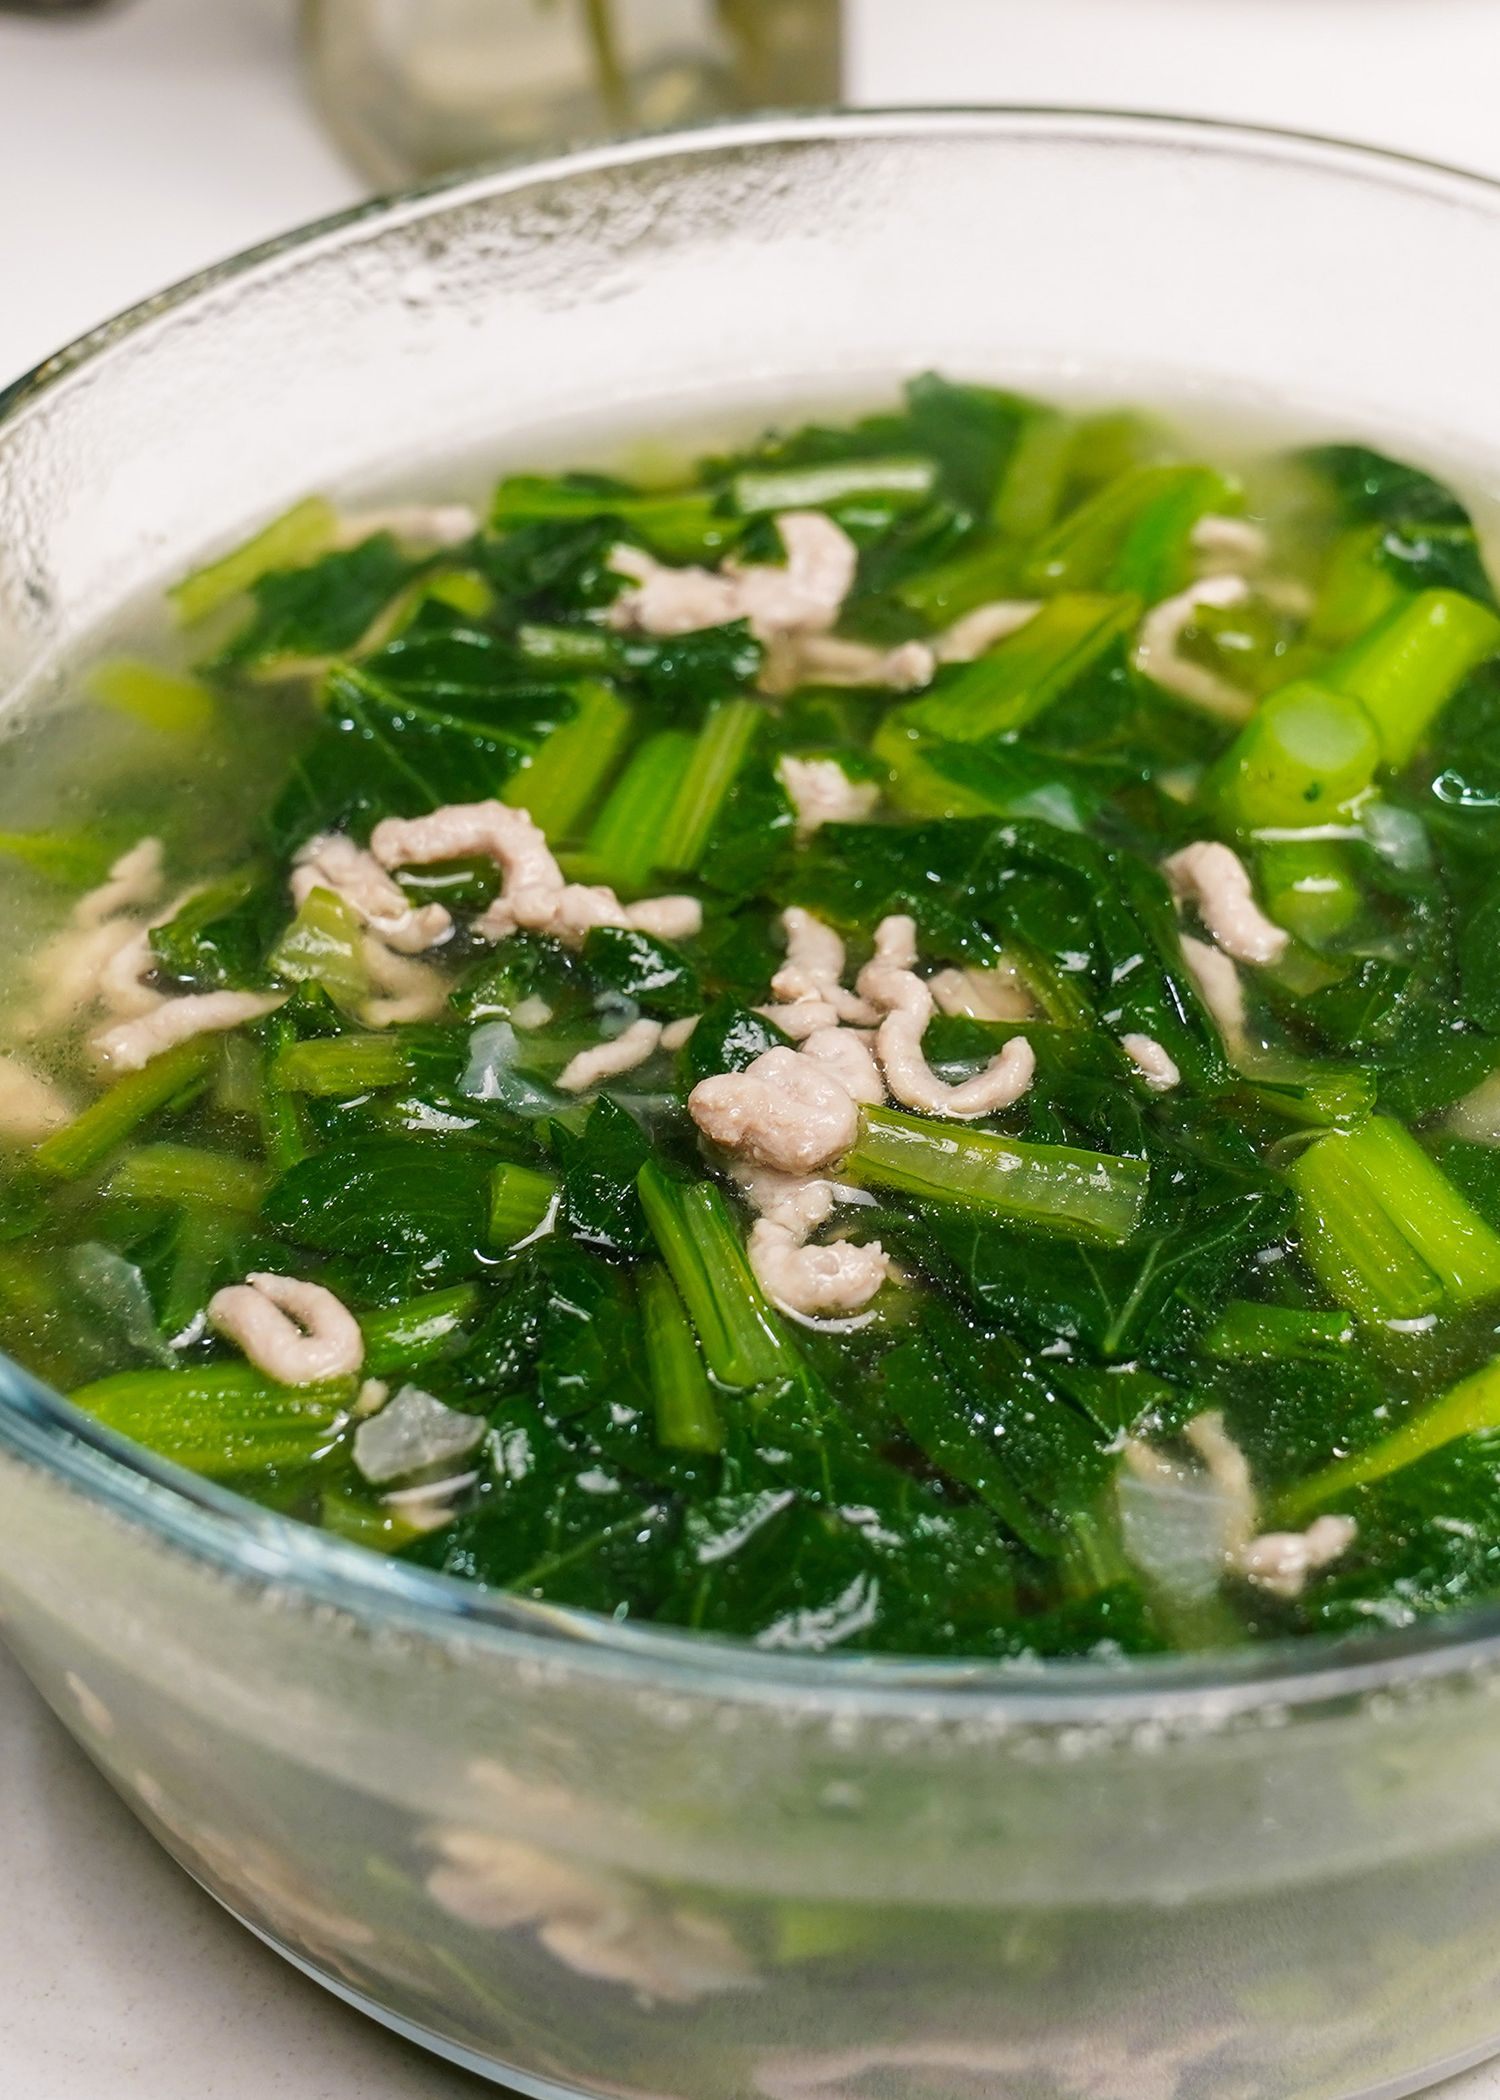 Bạn đã biết phương pháp nấu nướng canh hàu rau xanh cải giải sức nóng mang lại ngày hè chưa?